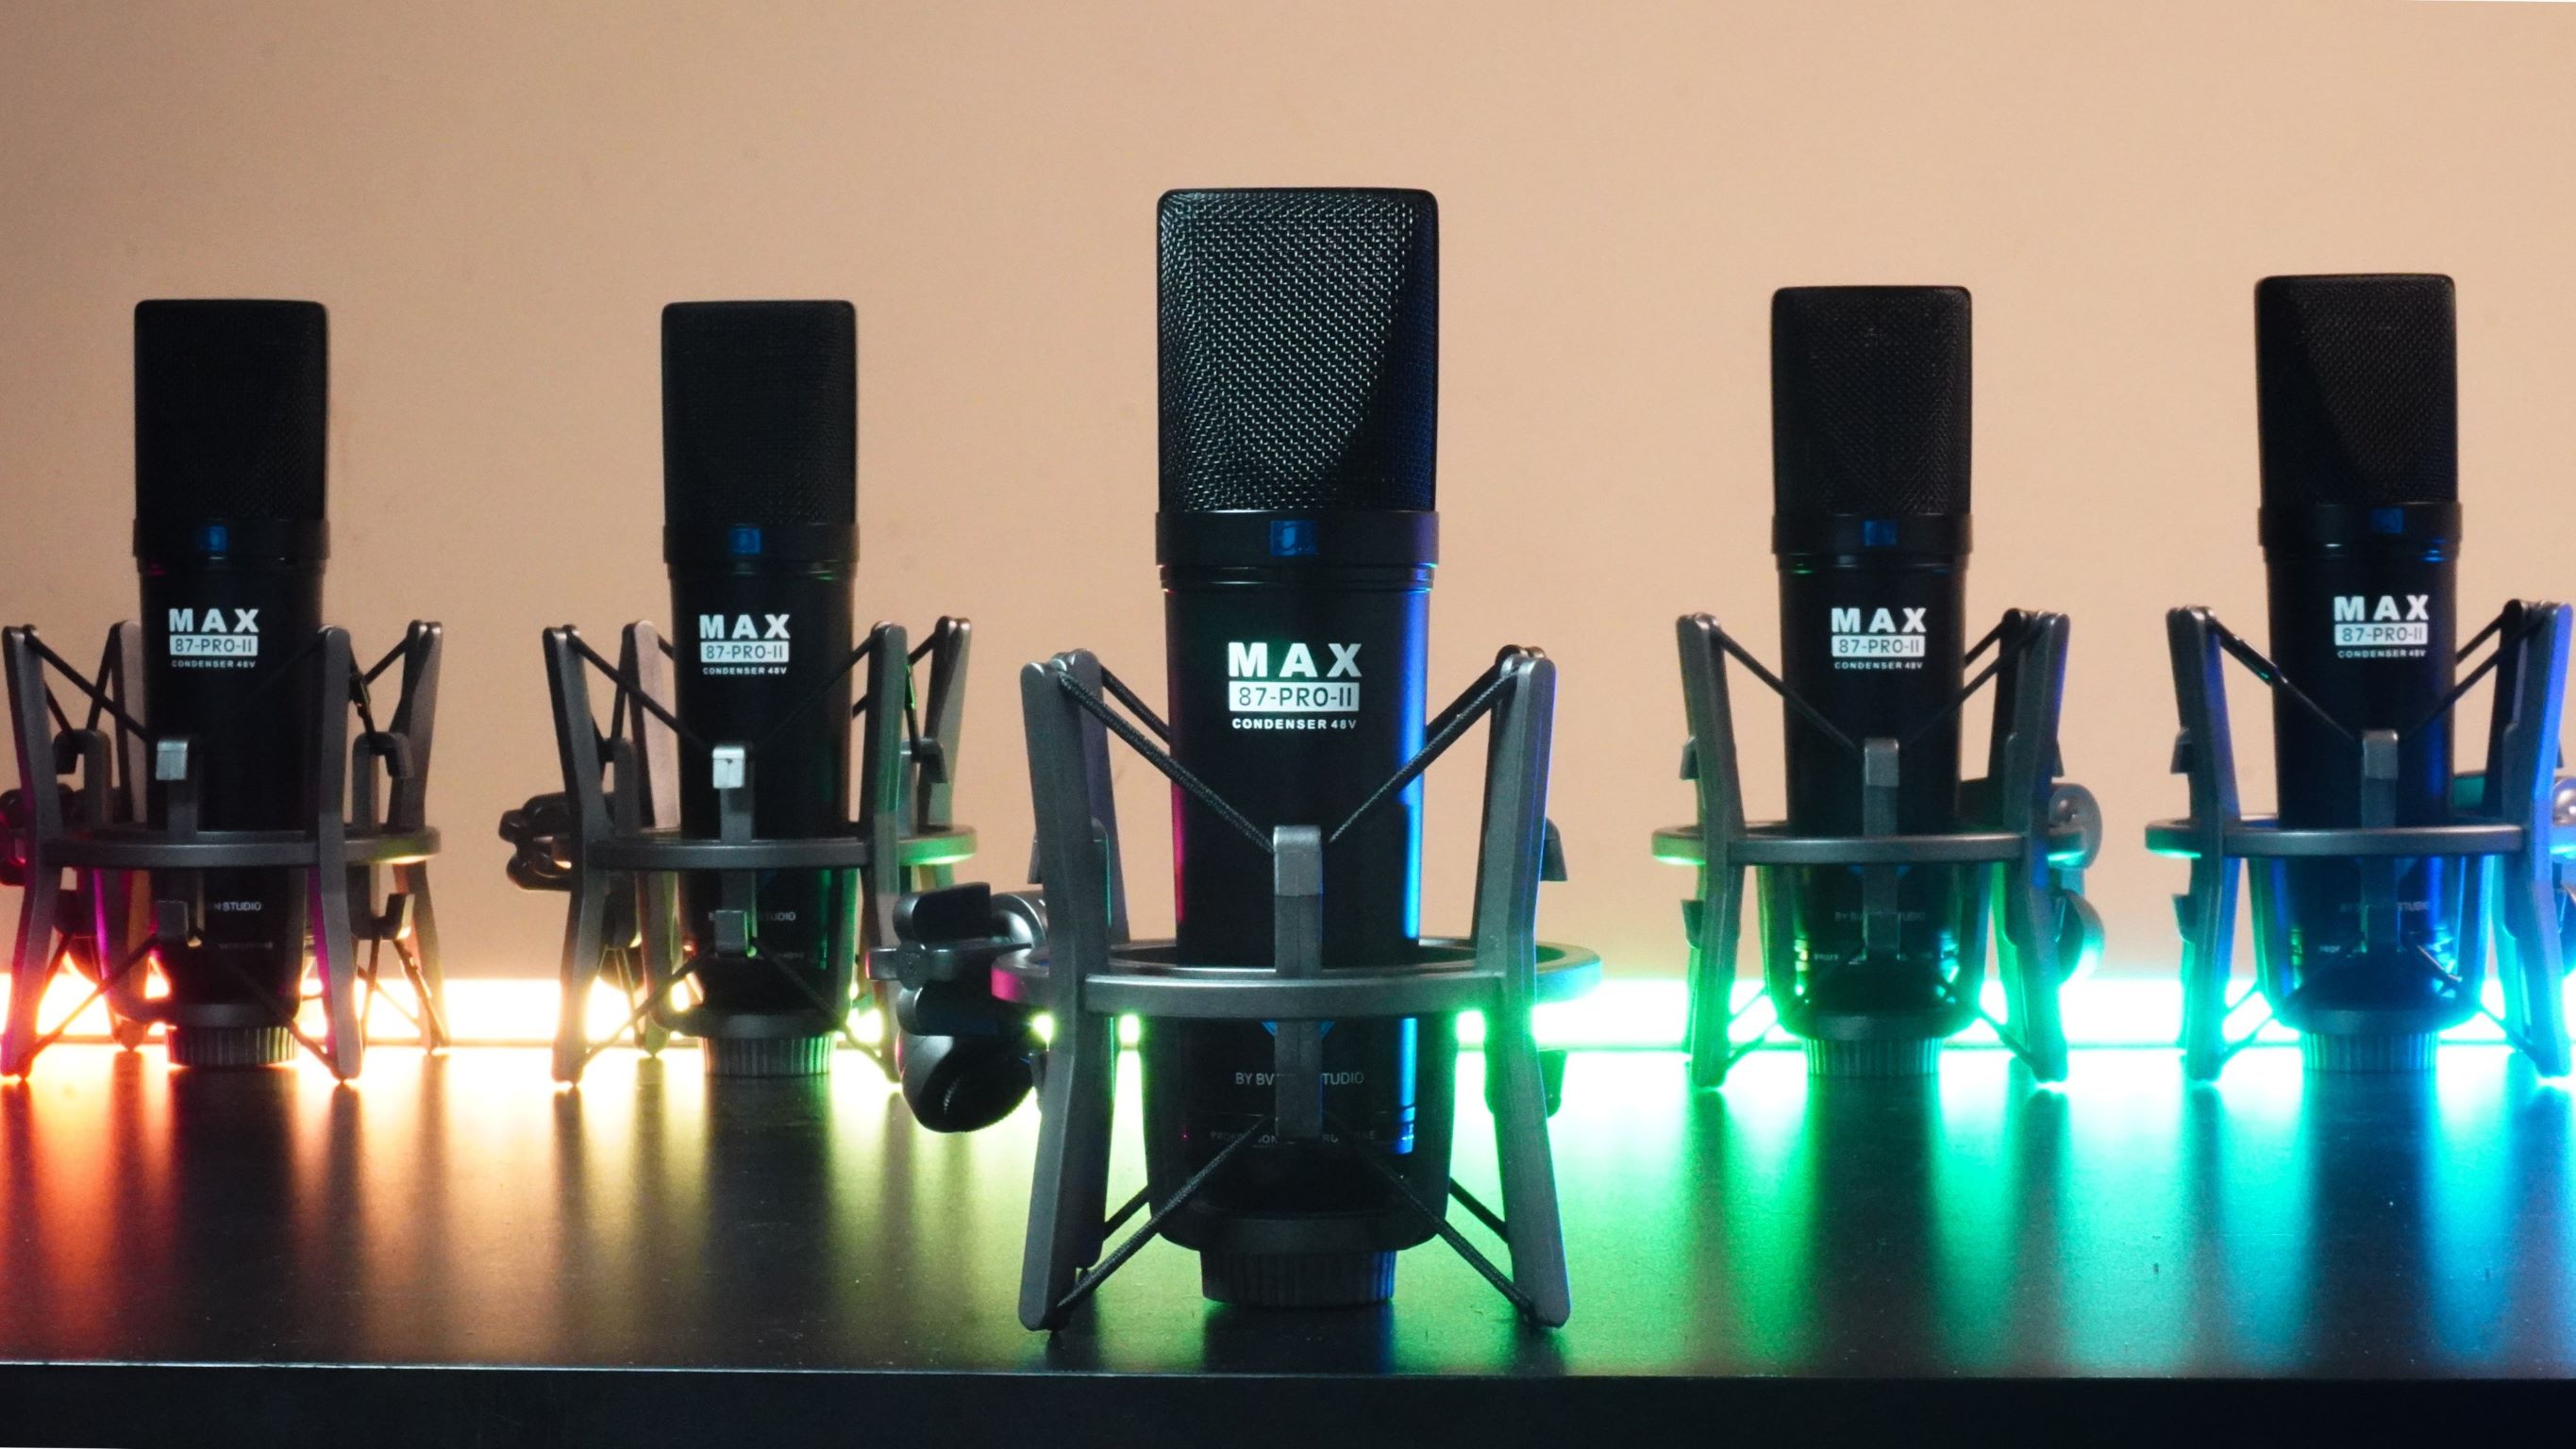 Mic thu âm Max 87-Pro-II - Phiên bản mới 2022 - Micro 48V thu âm chuyên nghiệp - Condenser microphone - Dùng cho phòng thu, livestream, karaoke online - Tương thích nhiều loại soundcard, mixer - Thiết kế tinh tế, sang trọng - Hàng nhập khẩu